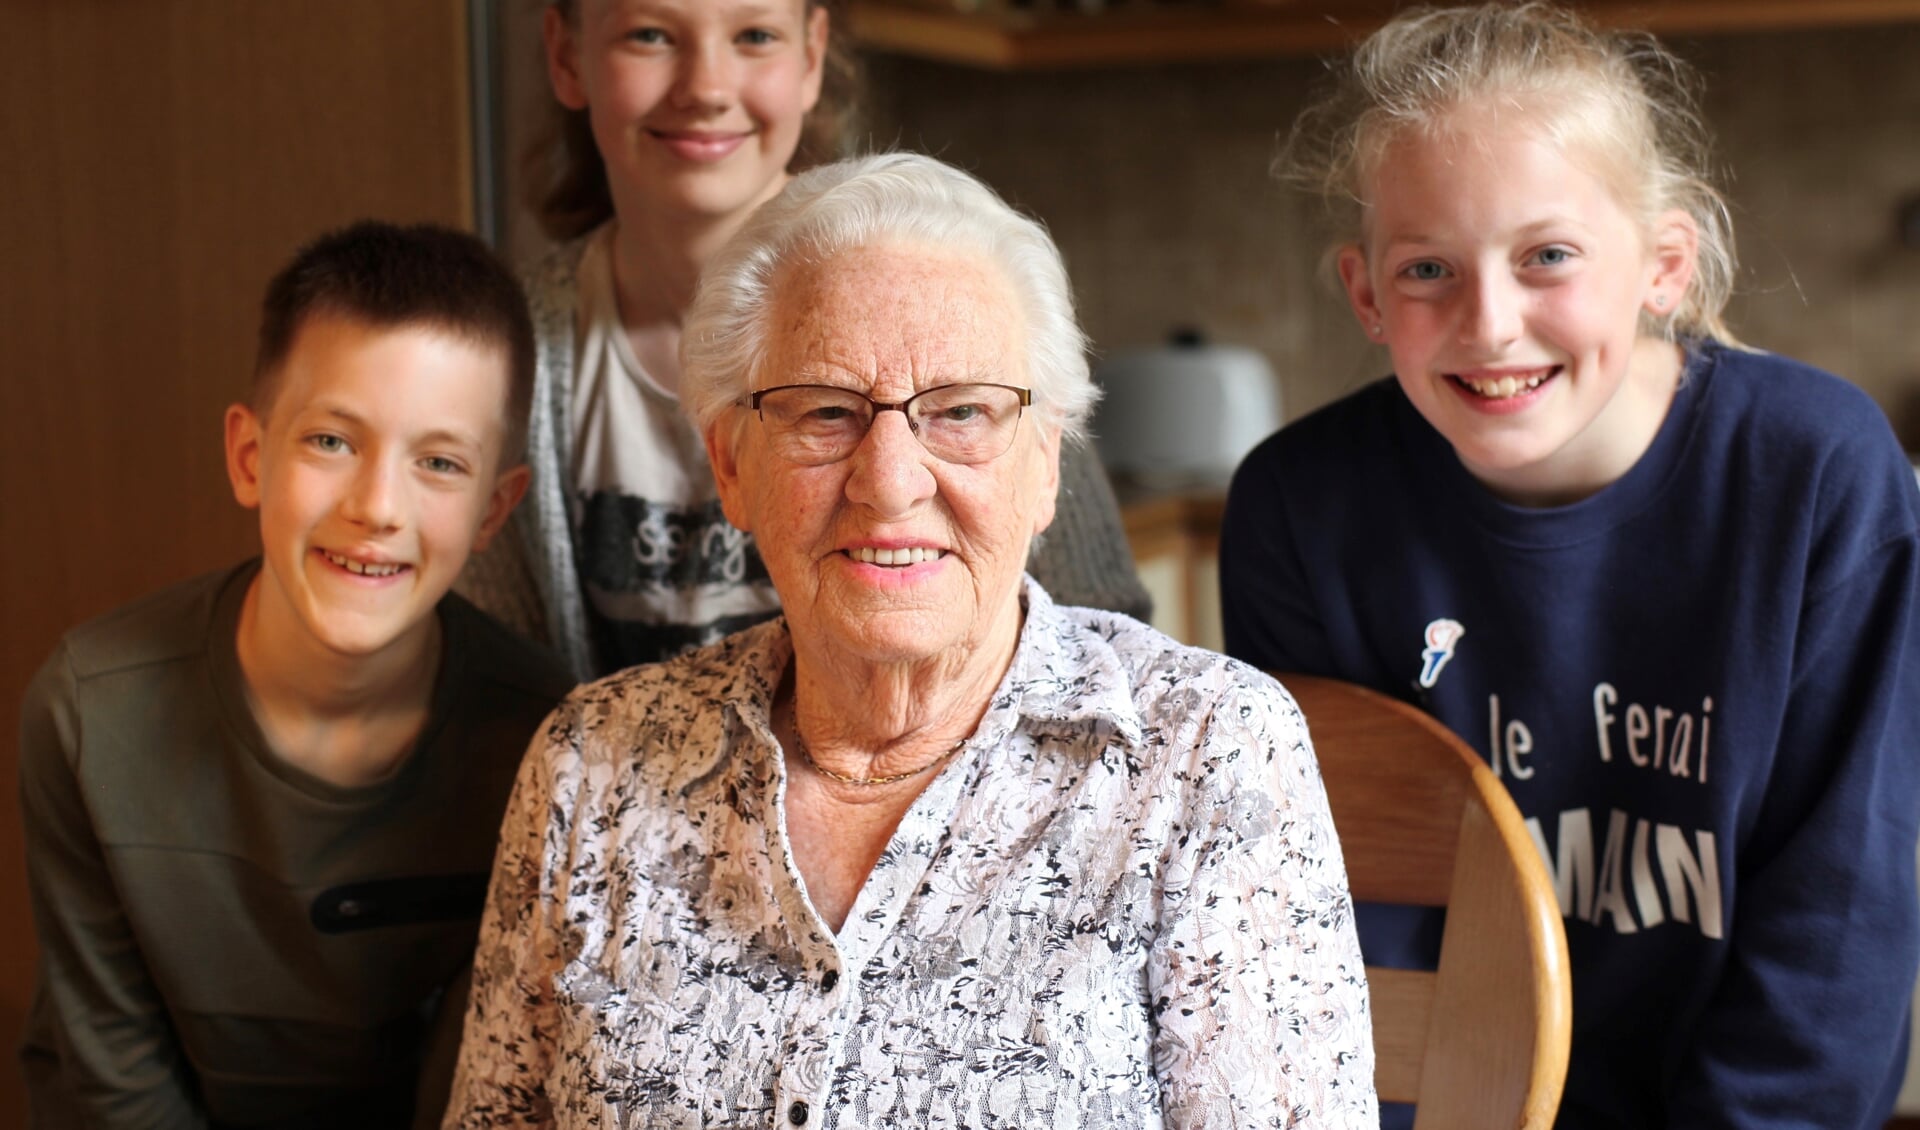 Joey, Amy en Sophie interviewden de 91-jarige mevrouw Willy den Hartigh- Balder over wat zij als kind van een verzetsheld heeft meegemaakt in de Tweede Wereldoorlog.